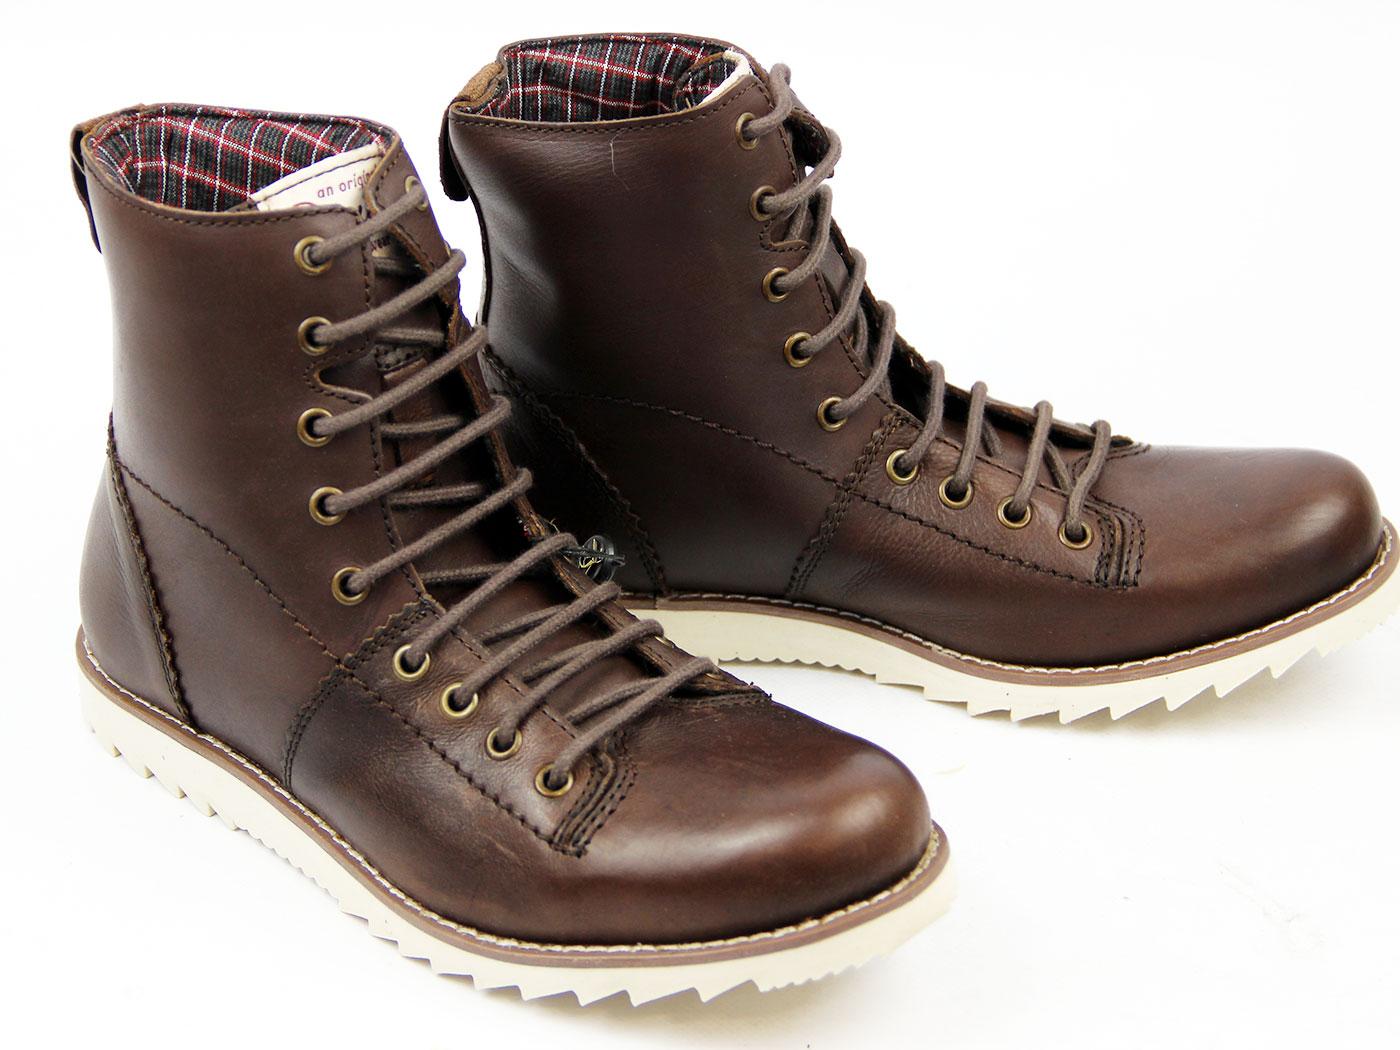 ORIGINAL PENGUIN Altoona Retro 70s Indie Leather Hiking Boots